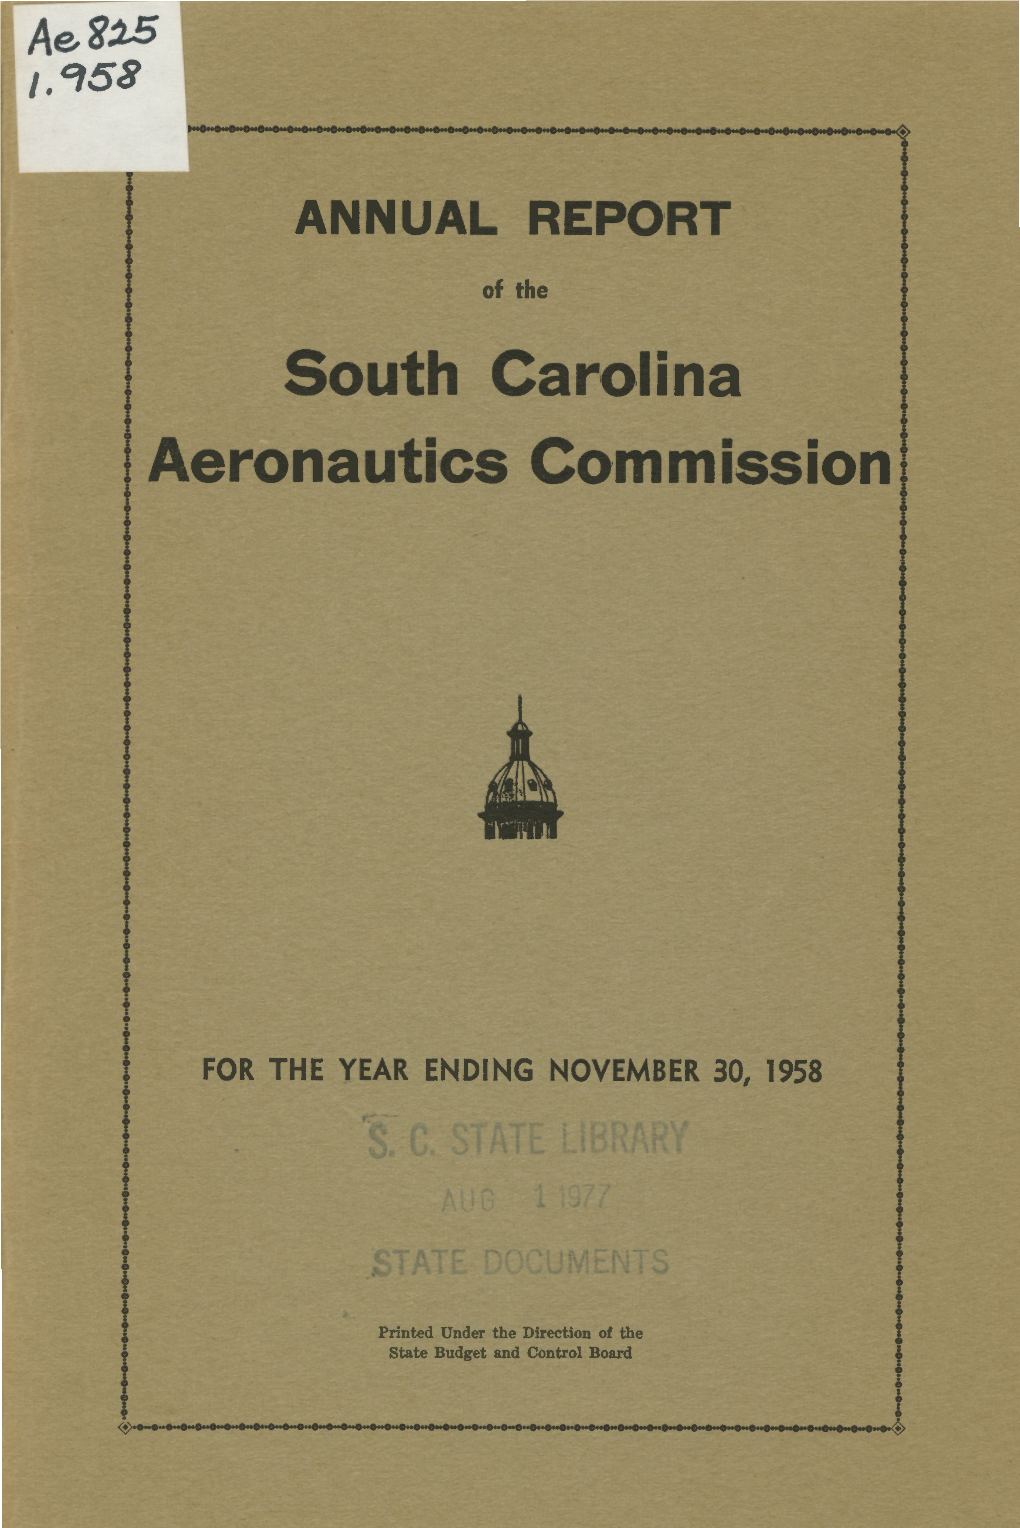 South Carolina Aeronautics Commission